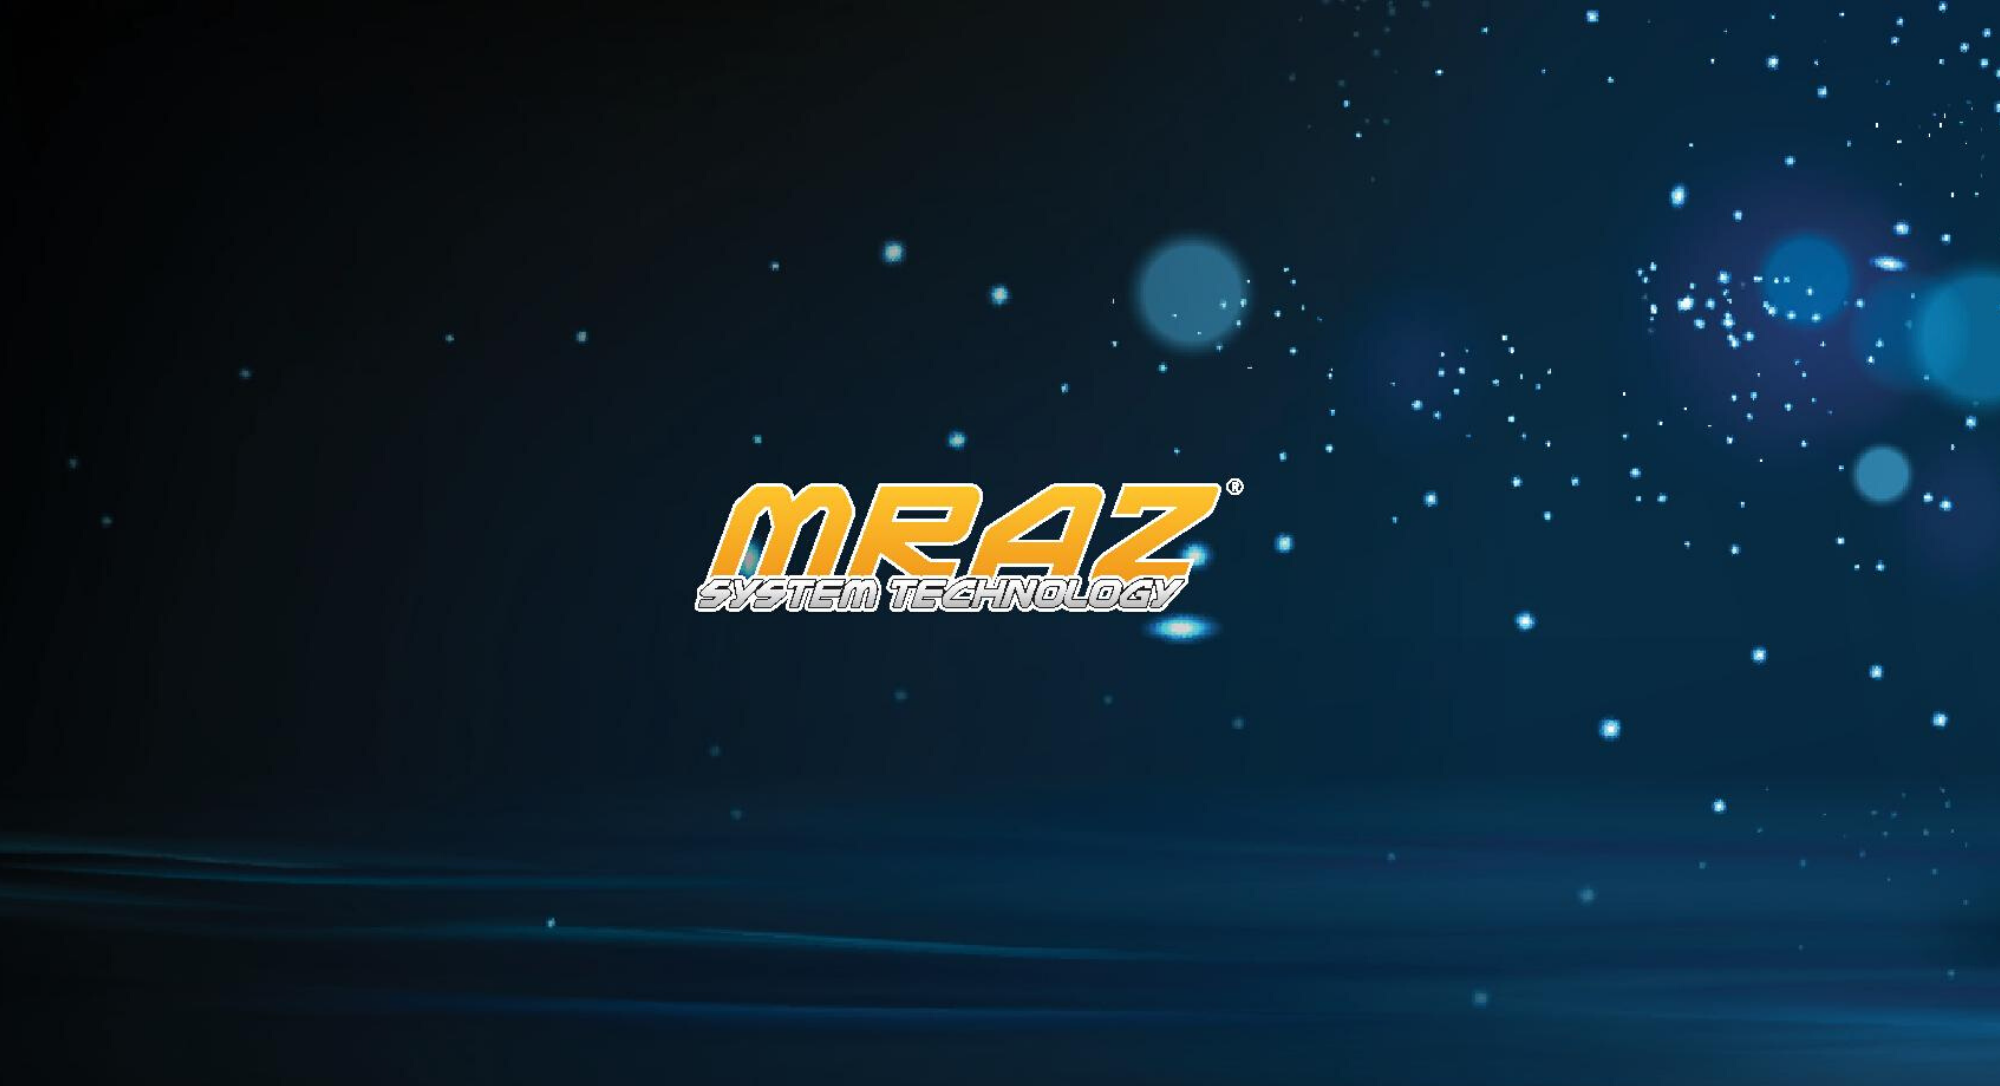 MRAZ System Technology